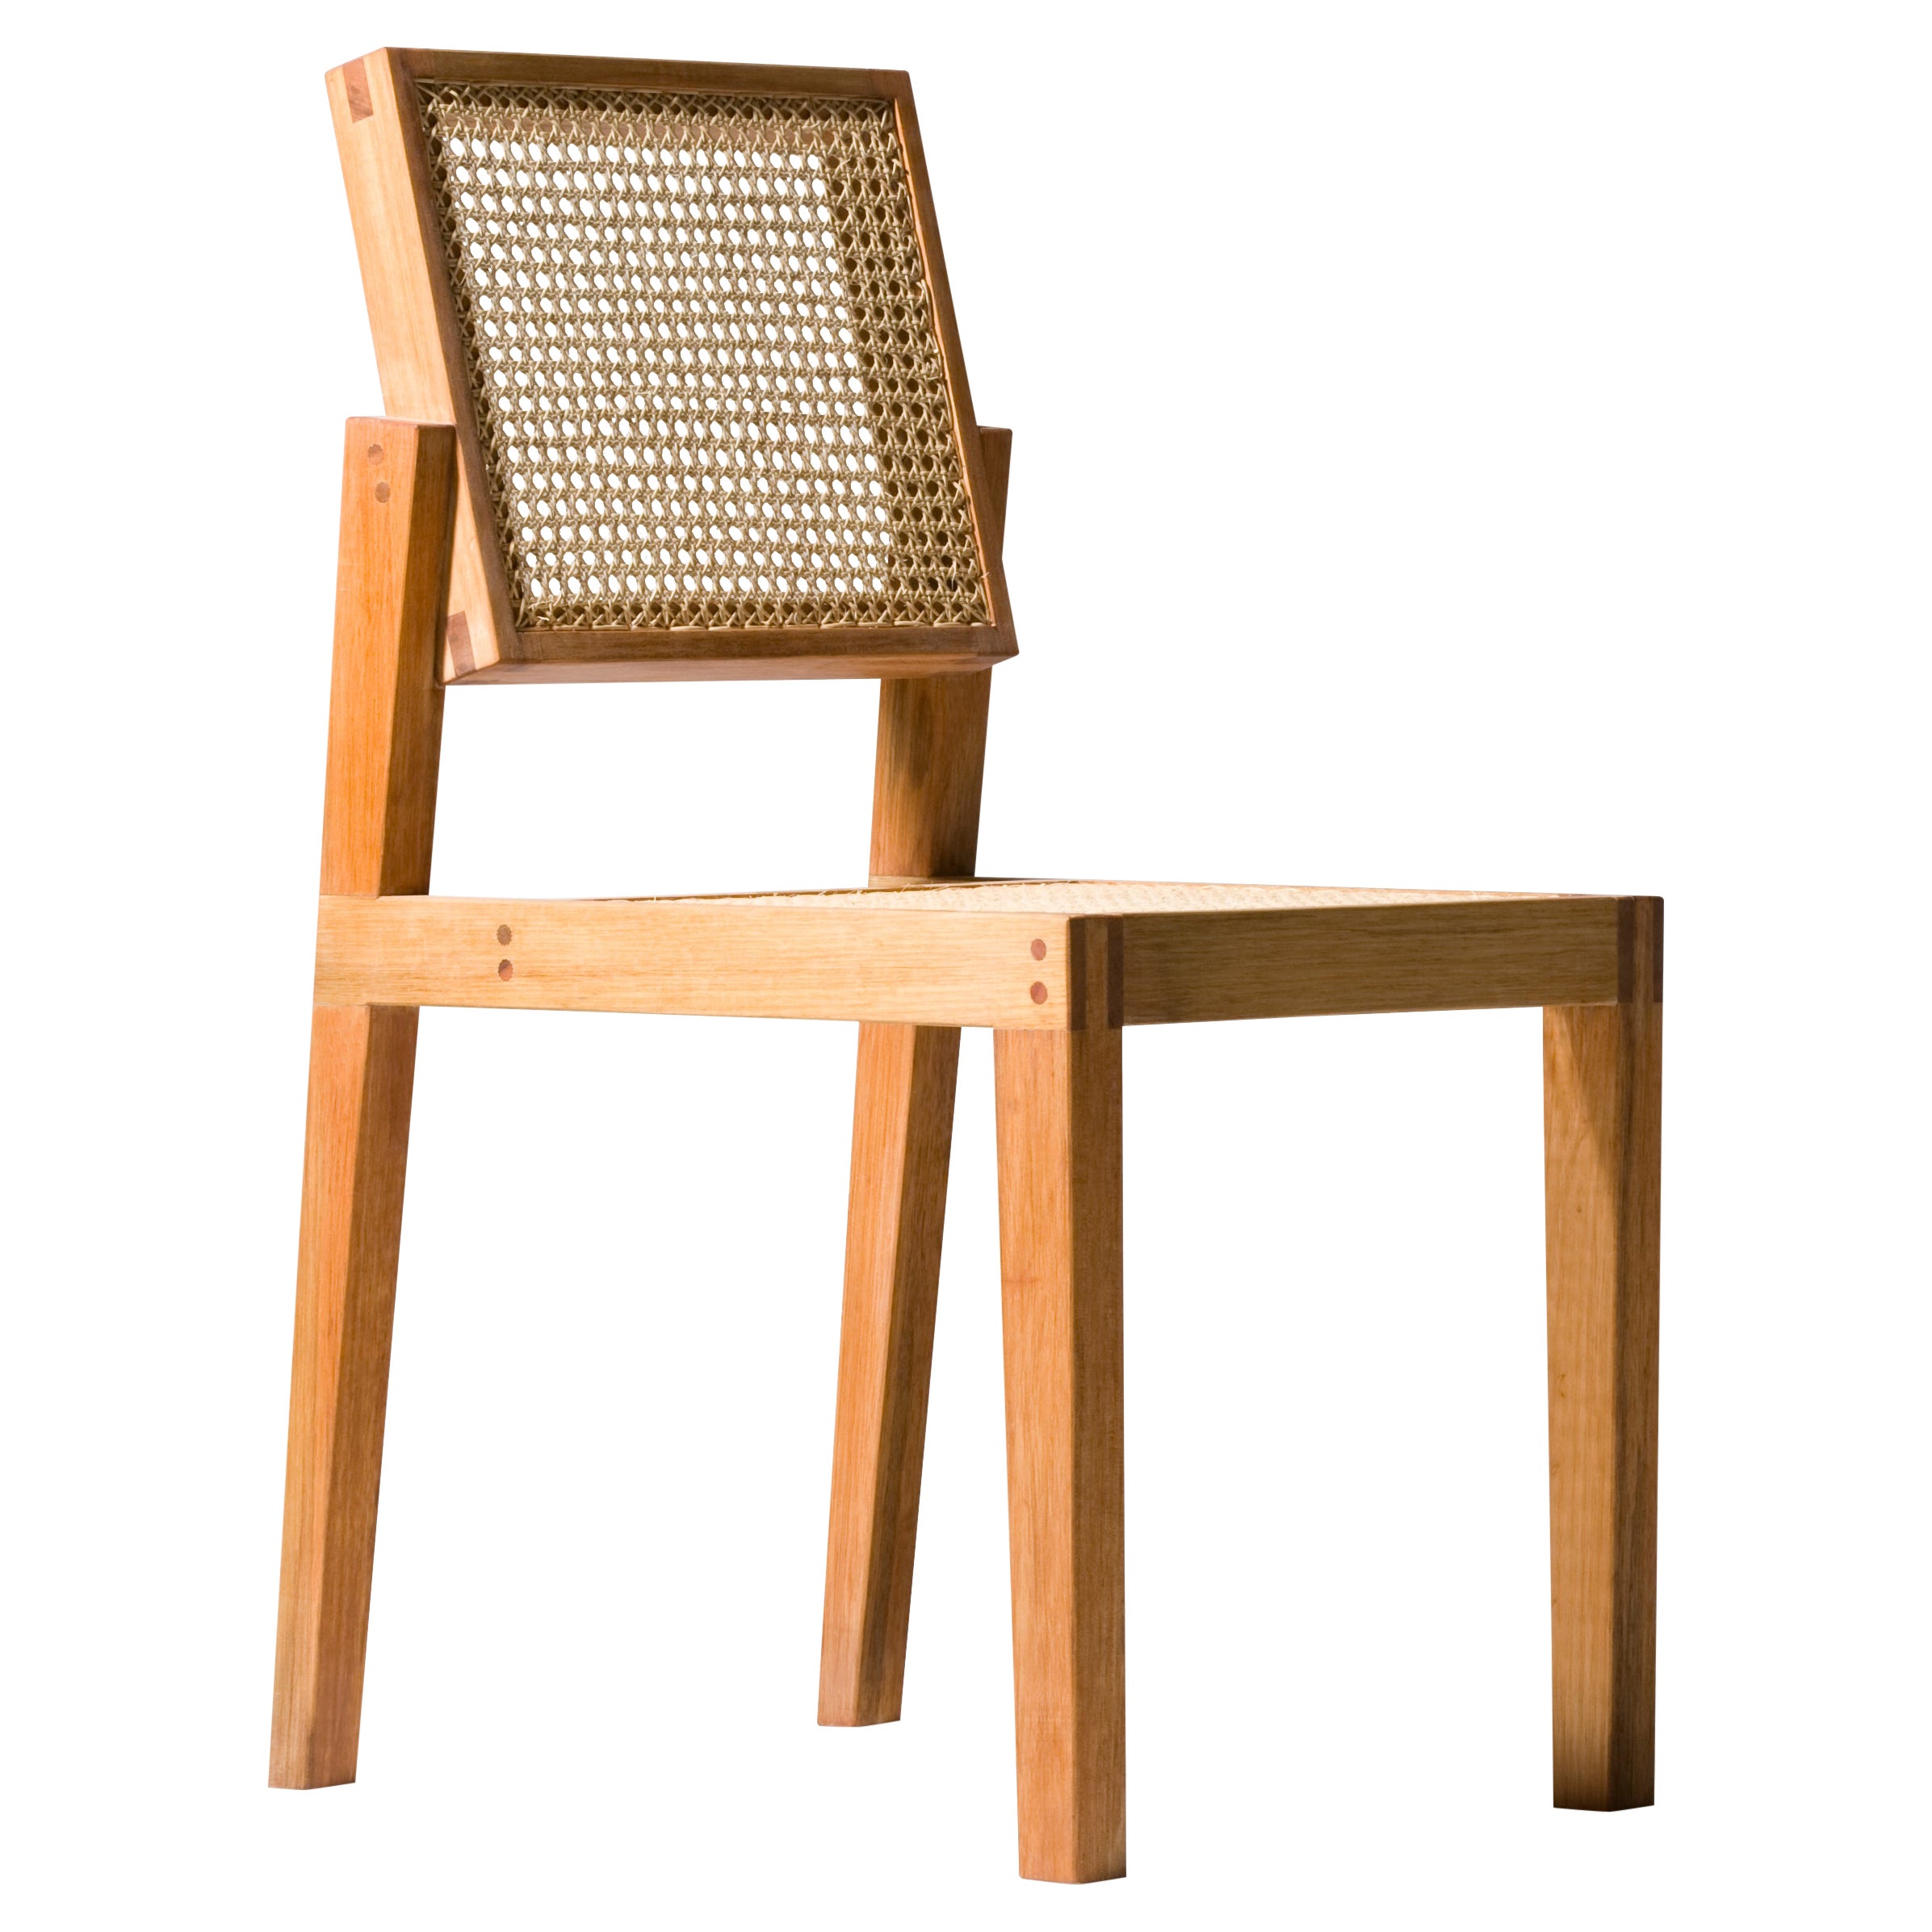 Parruda Chair For Sale